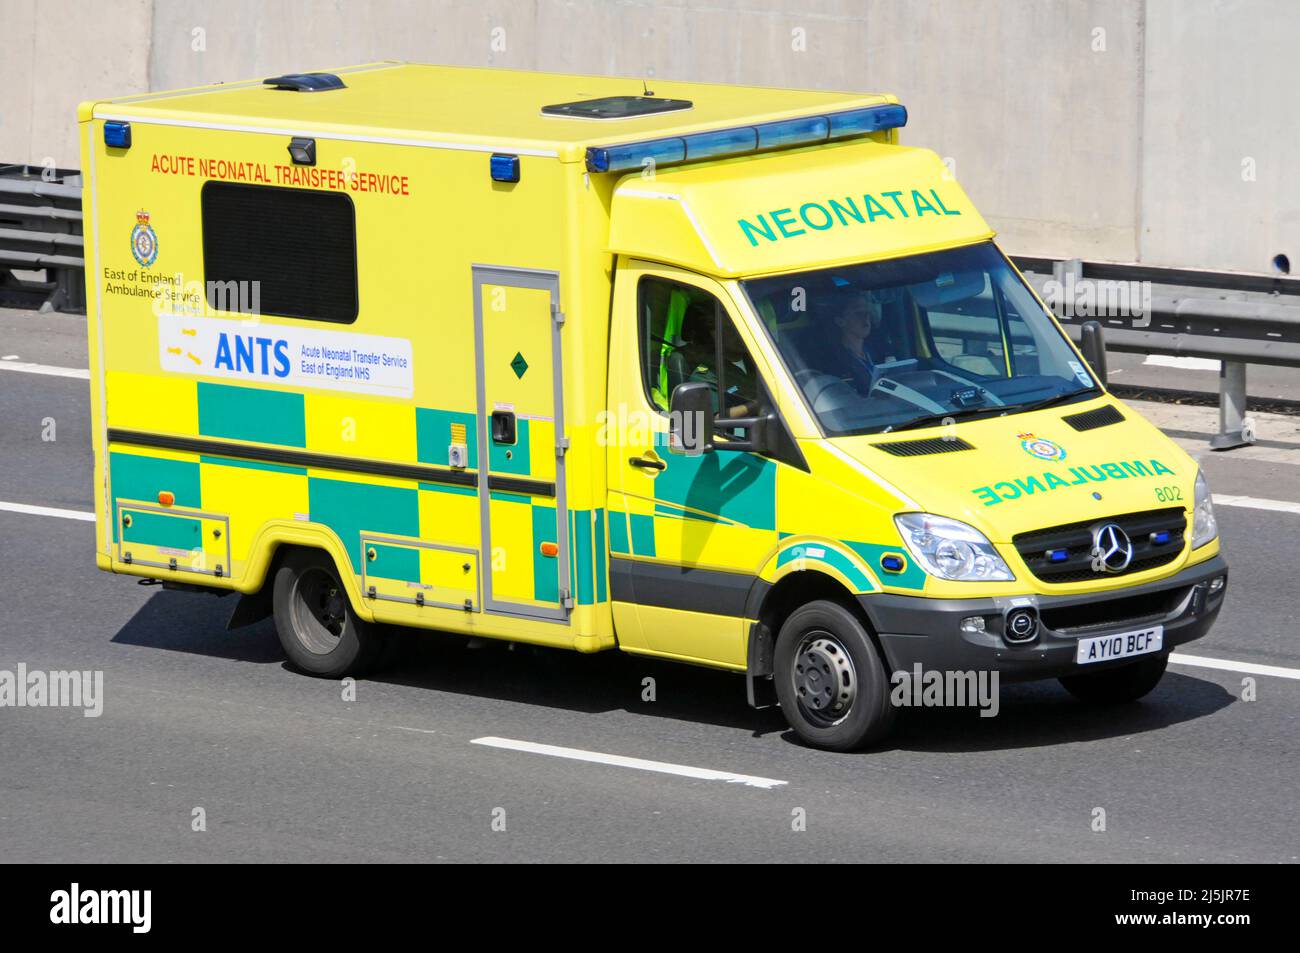 Vue latérale et avant Mercedes National Health Service NHS Trust est de l'Angleterre Ambulance une équipe de service de transfert néonatal aigu conduite sur l'autoroute britannique Banque D'Images